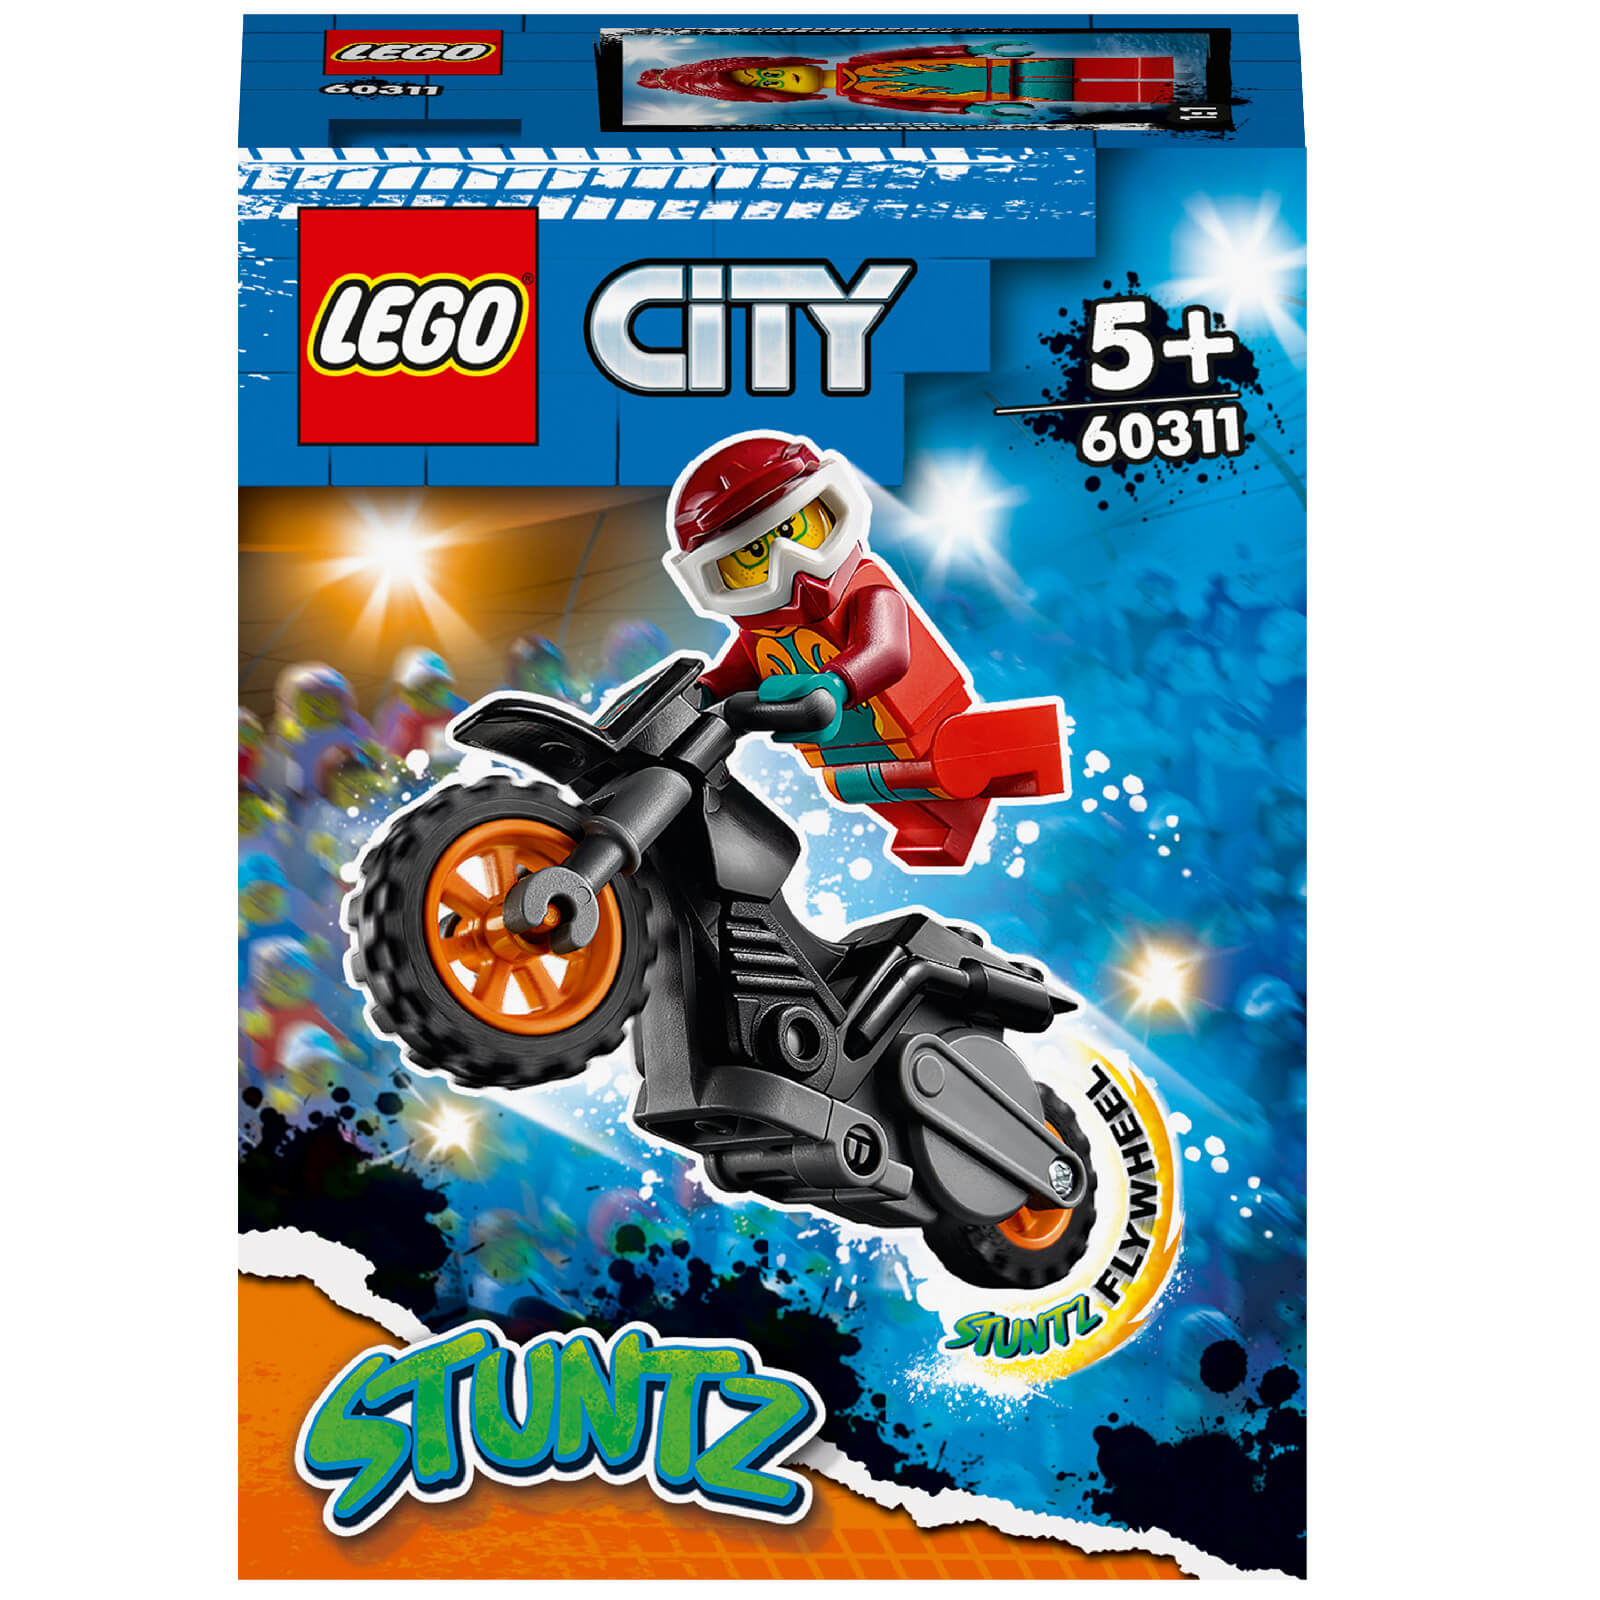 LEGO Ciy Fire Stunt Bike Toy (60311)